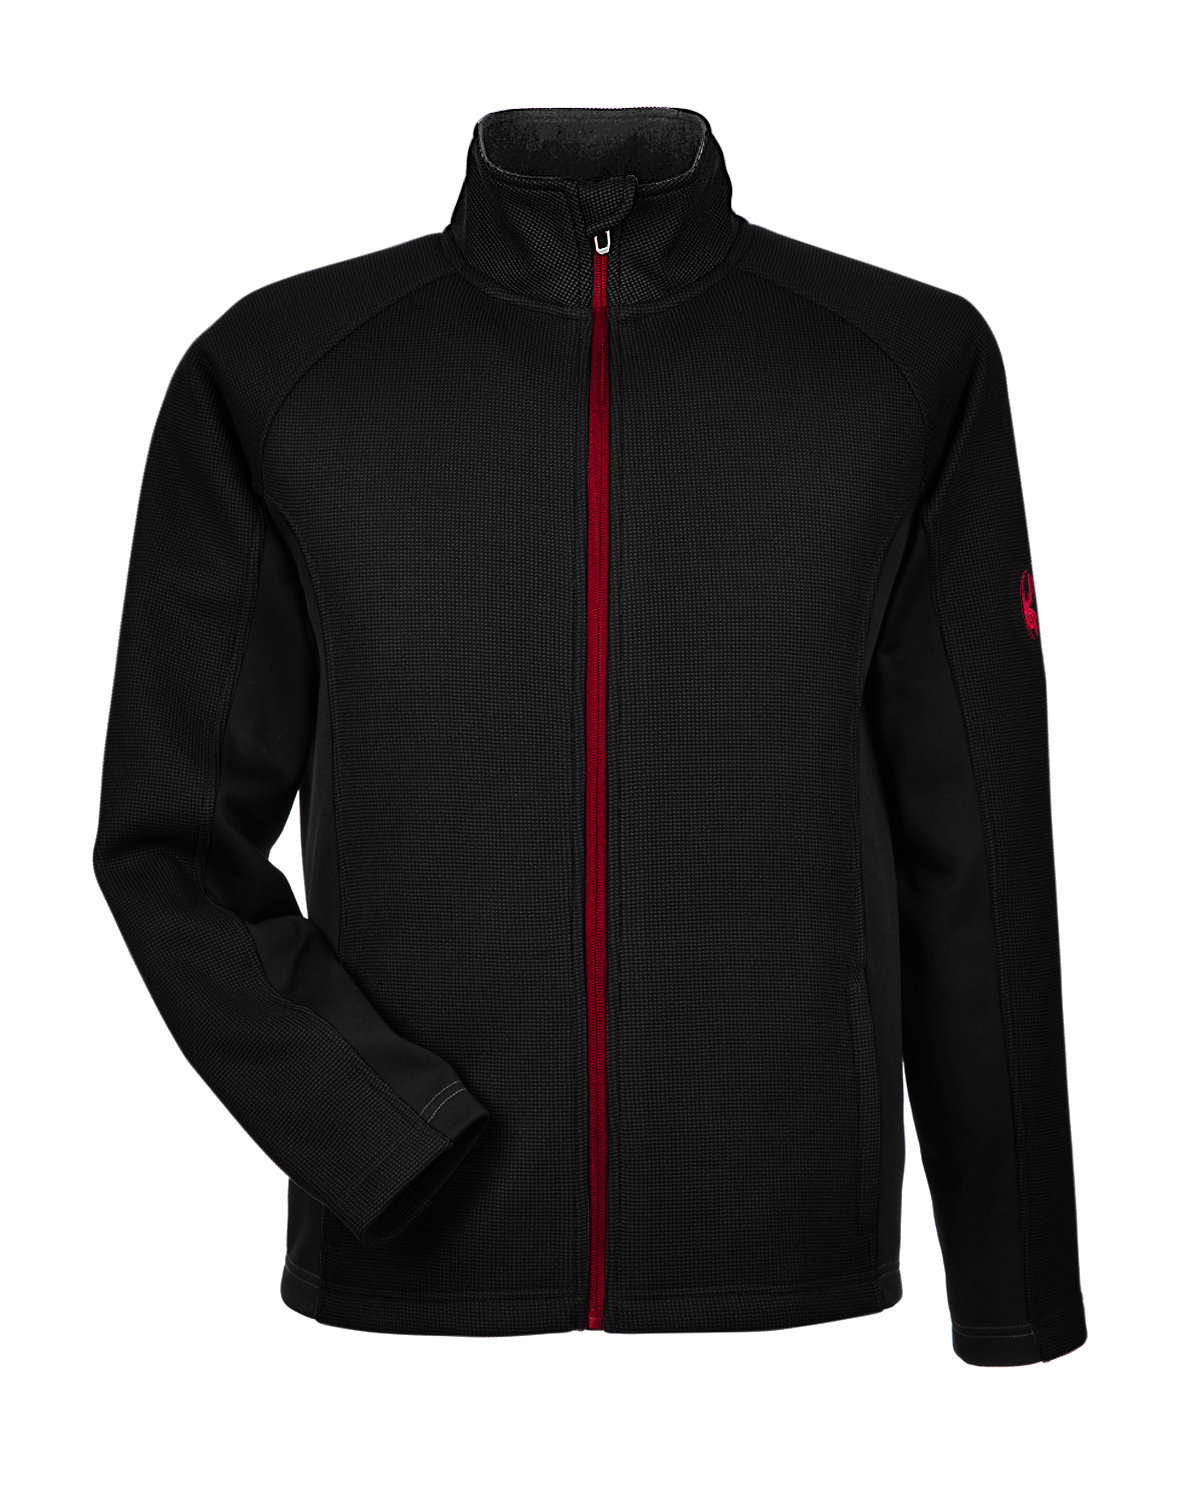 Spyder Men's Constant Full-Zip Sweater Fleece Jacket | alphabroder